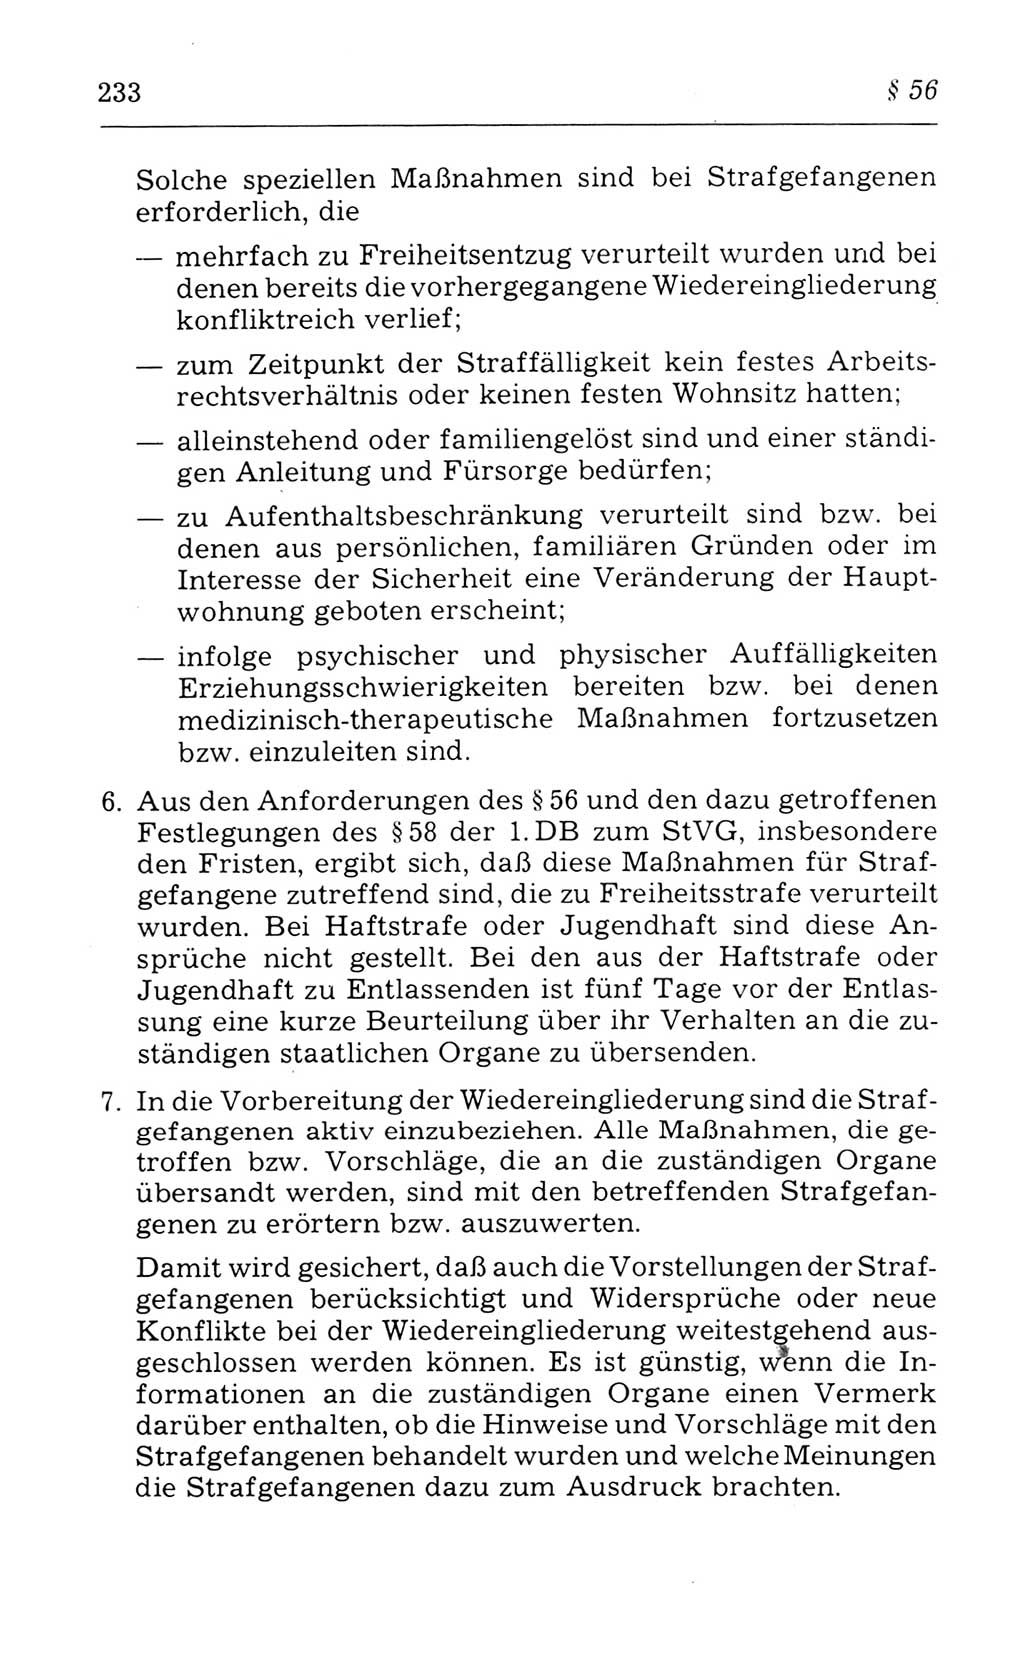 Kommentar zum Strafvollzugsgesetz [(StVG) Deutsche Demokratische Republik (DDR)] 1980, Seite 233 (Komm. StVG DDR 1980, S. 233)